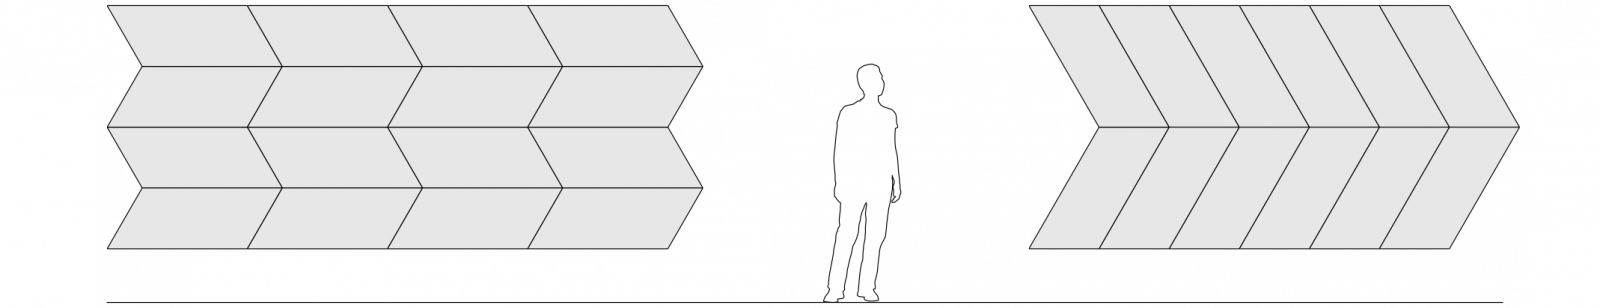 Hai loại phối hợp hình bình hành trái phải khác nhau